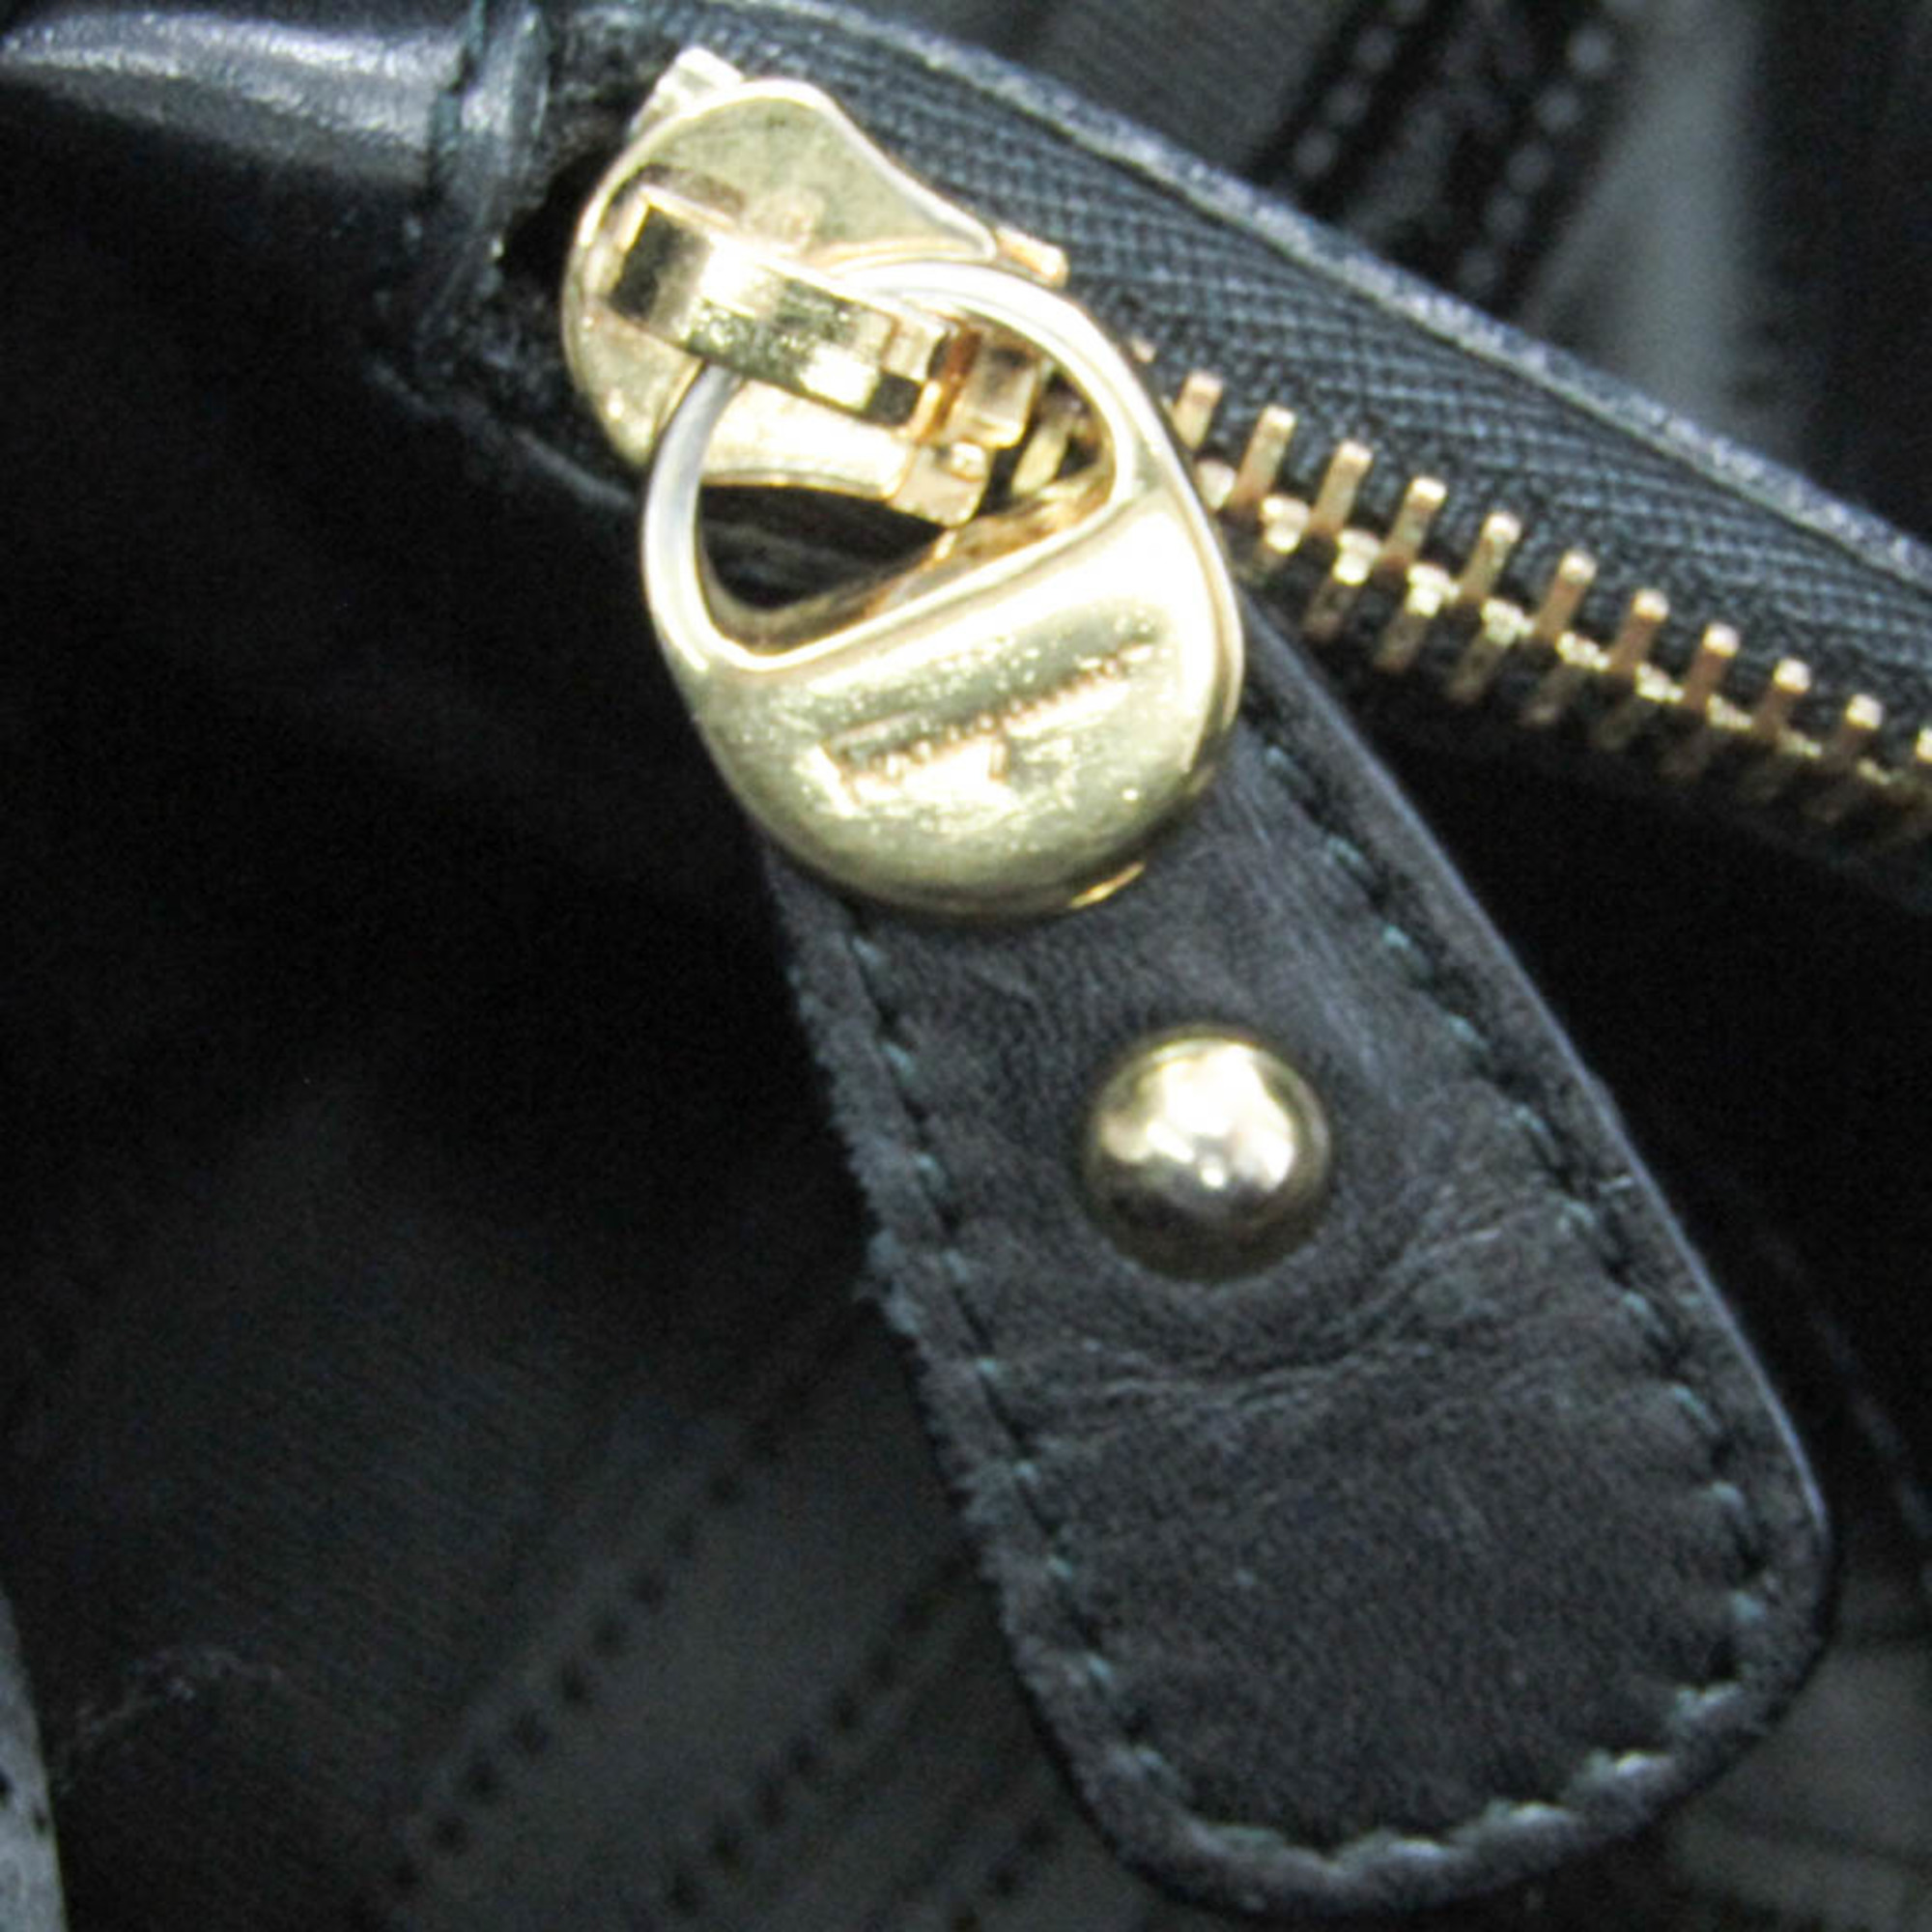 Salvatore Ferragamo GG-21D395 Women's Nylon,Leather Tote Bag Black